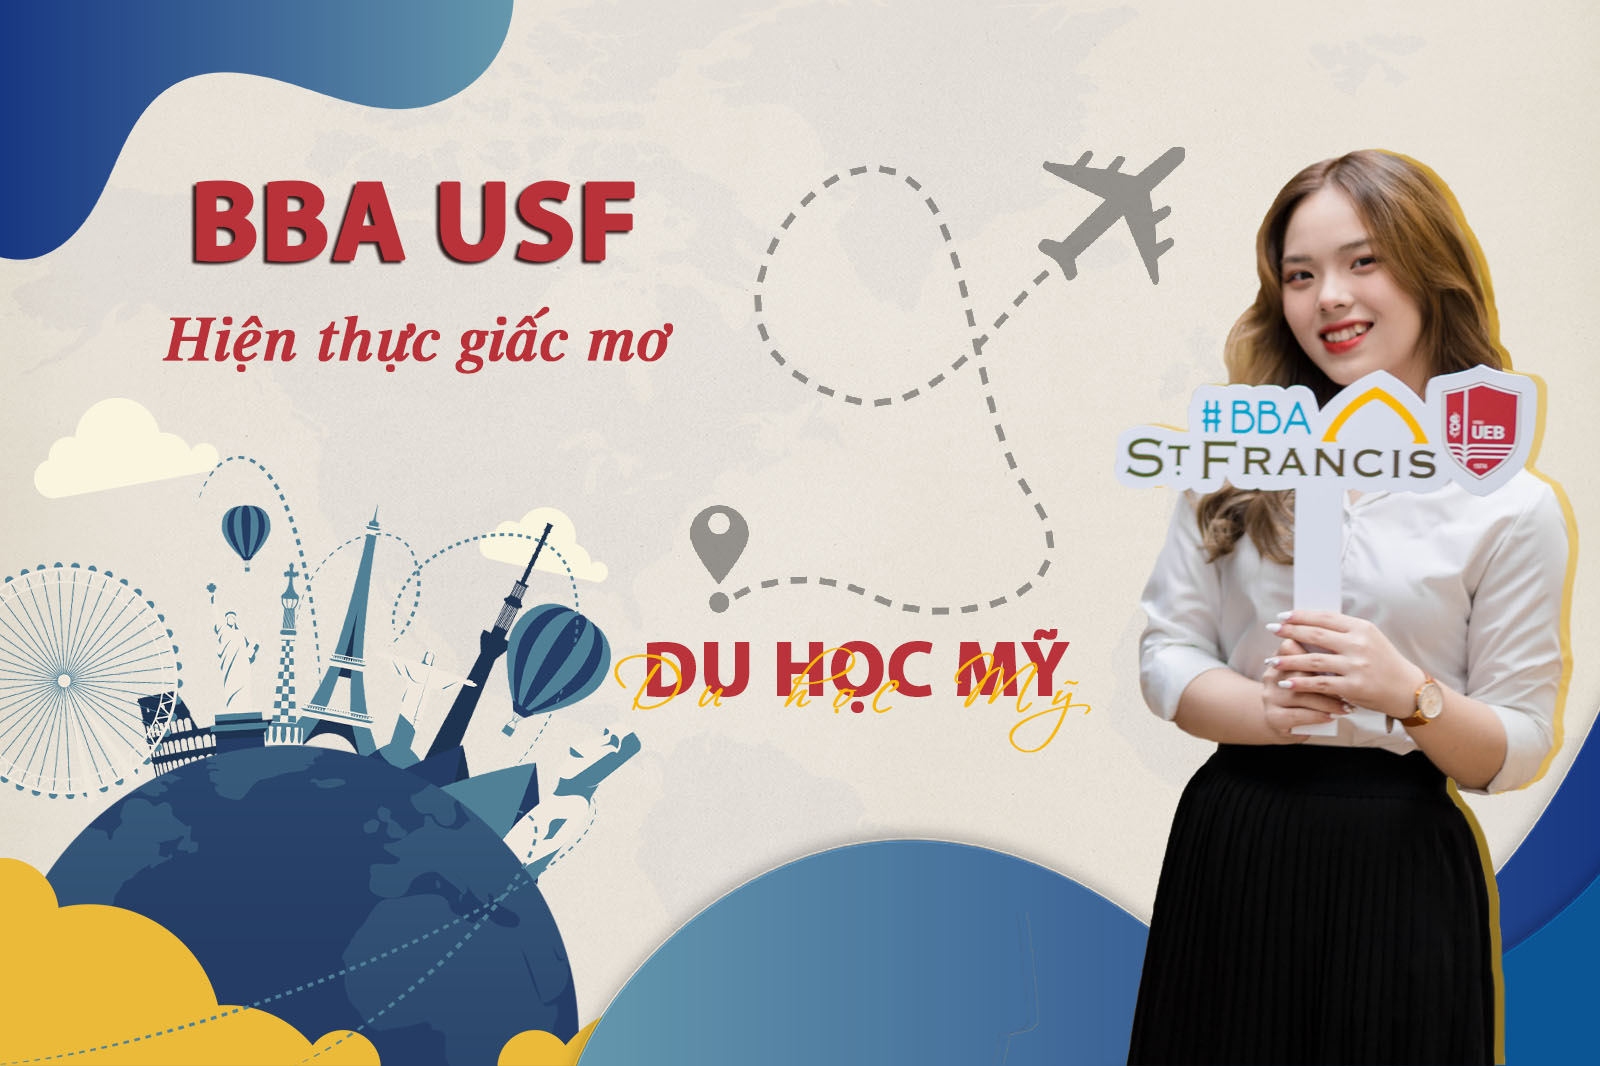 Hàng triệu sinh viên trên khắp thế giới đã chọn Đại học St.Francis, Mỹ. Còn bạn đã chọn UEB - USF chưa?